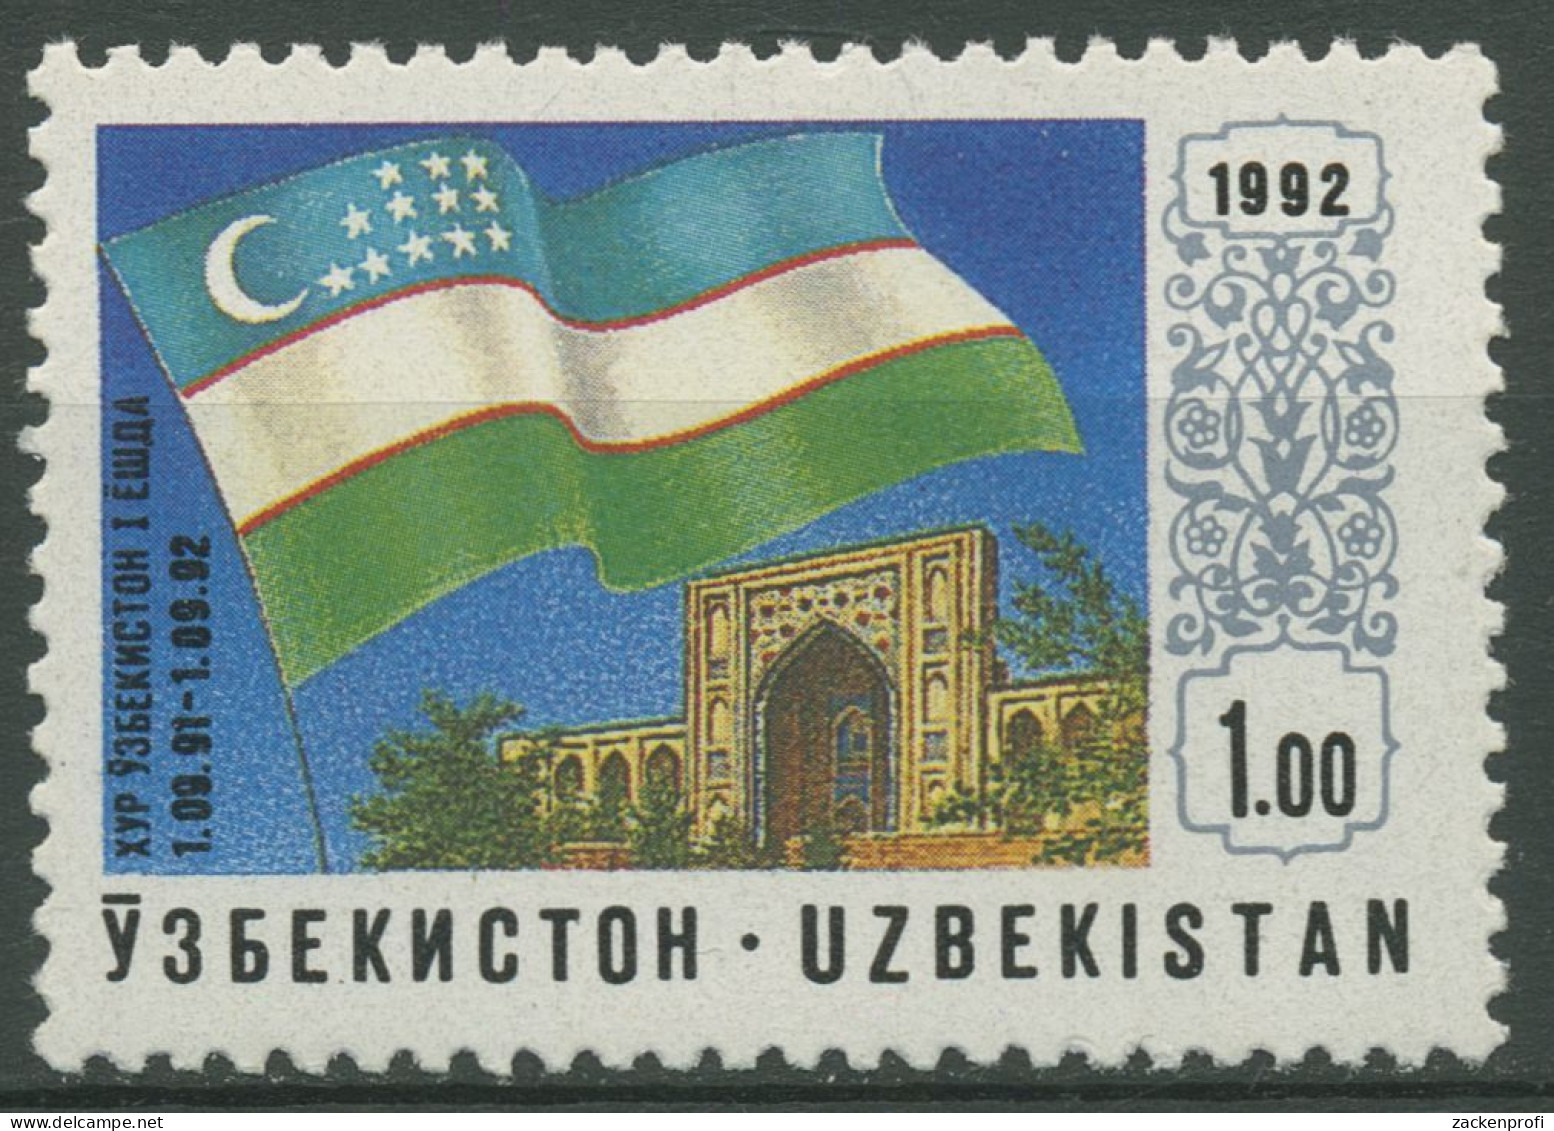 Usbekistan 1992 Unabhängigkeit Flagge 3 Postfrisch - Uzbekistan